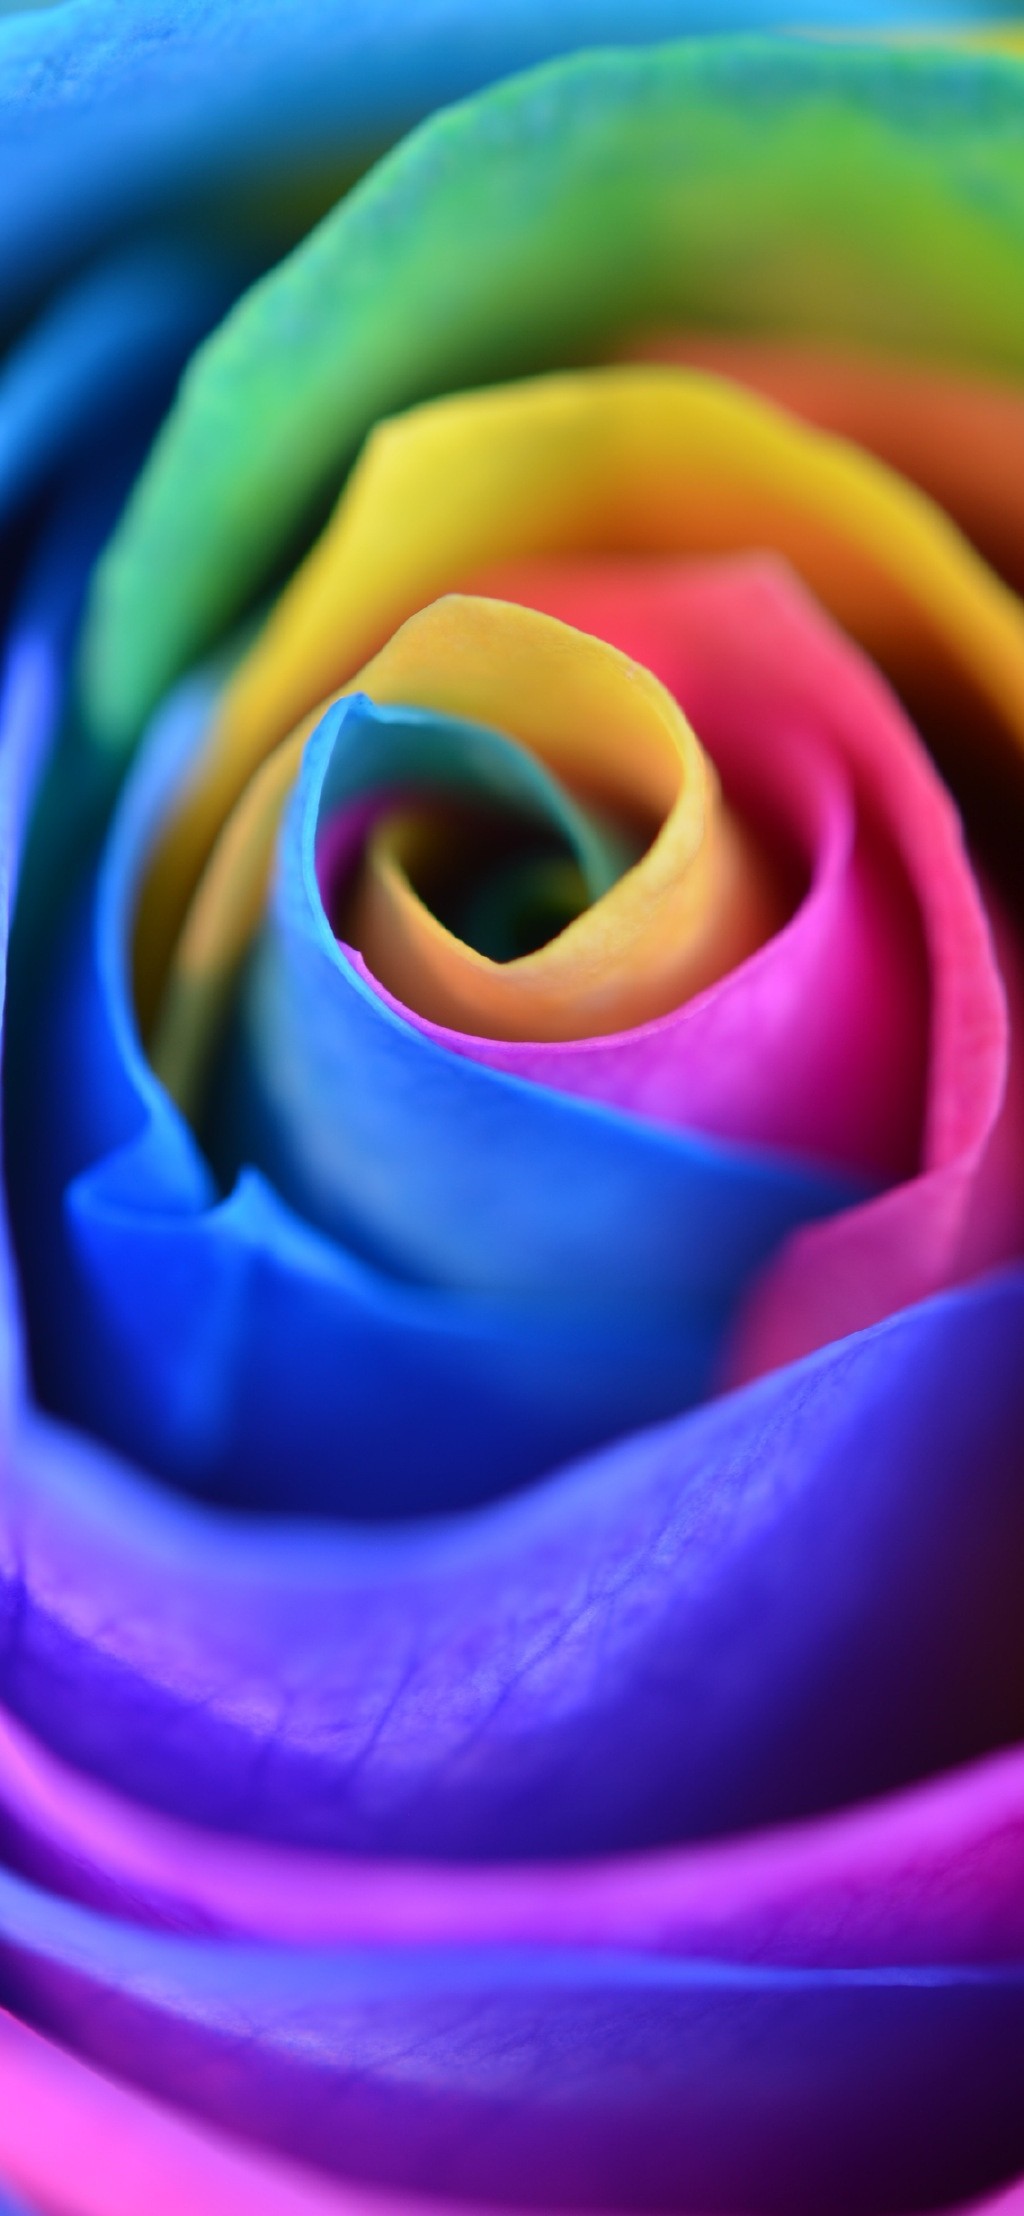 彩虹玫瑰主题唯美手机壁纸